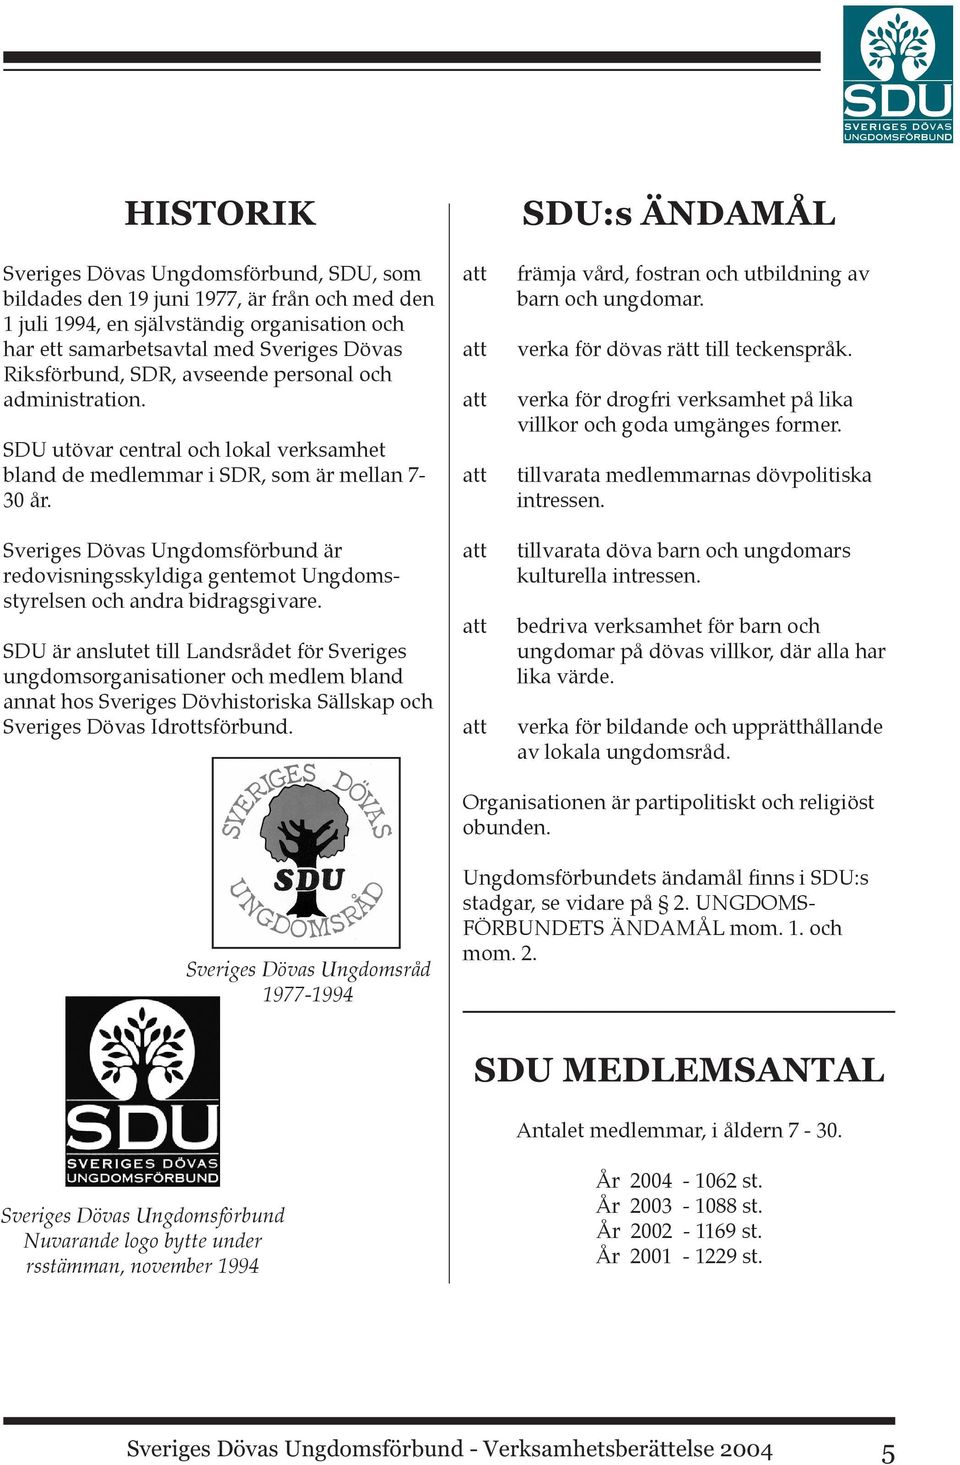 Sveriges Dövas Ungdomsförbund är redovisningsskyldiga gentemot Ungdomsstyrelsen och andra bidragsgivare.